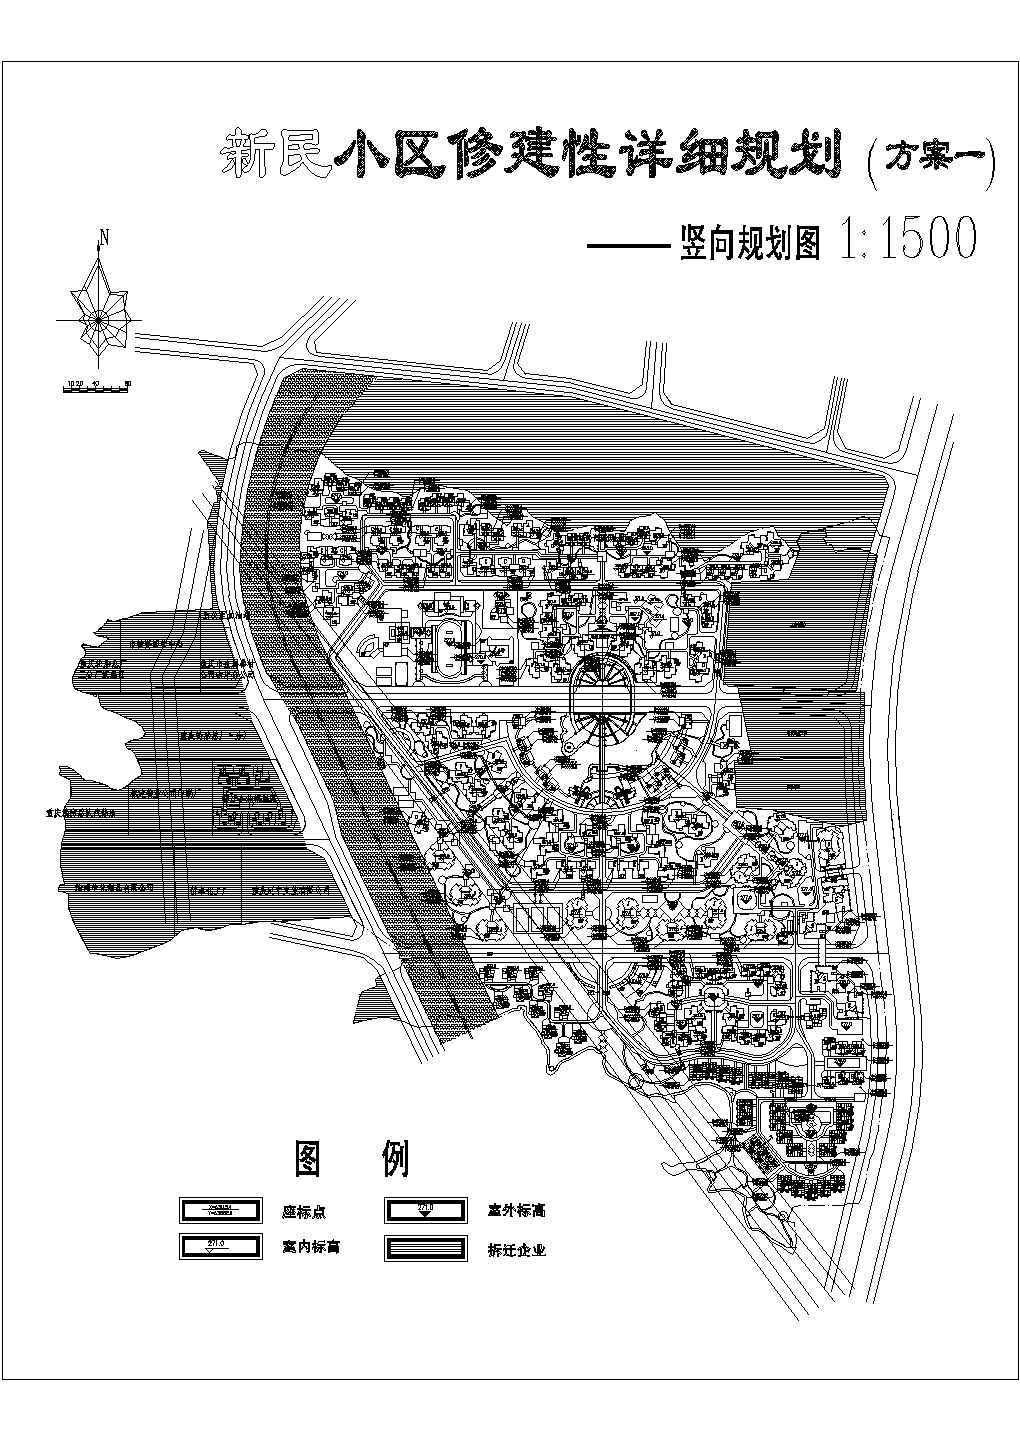 重庆市某区新民小区CAD规划设计图